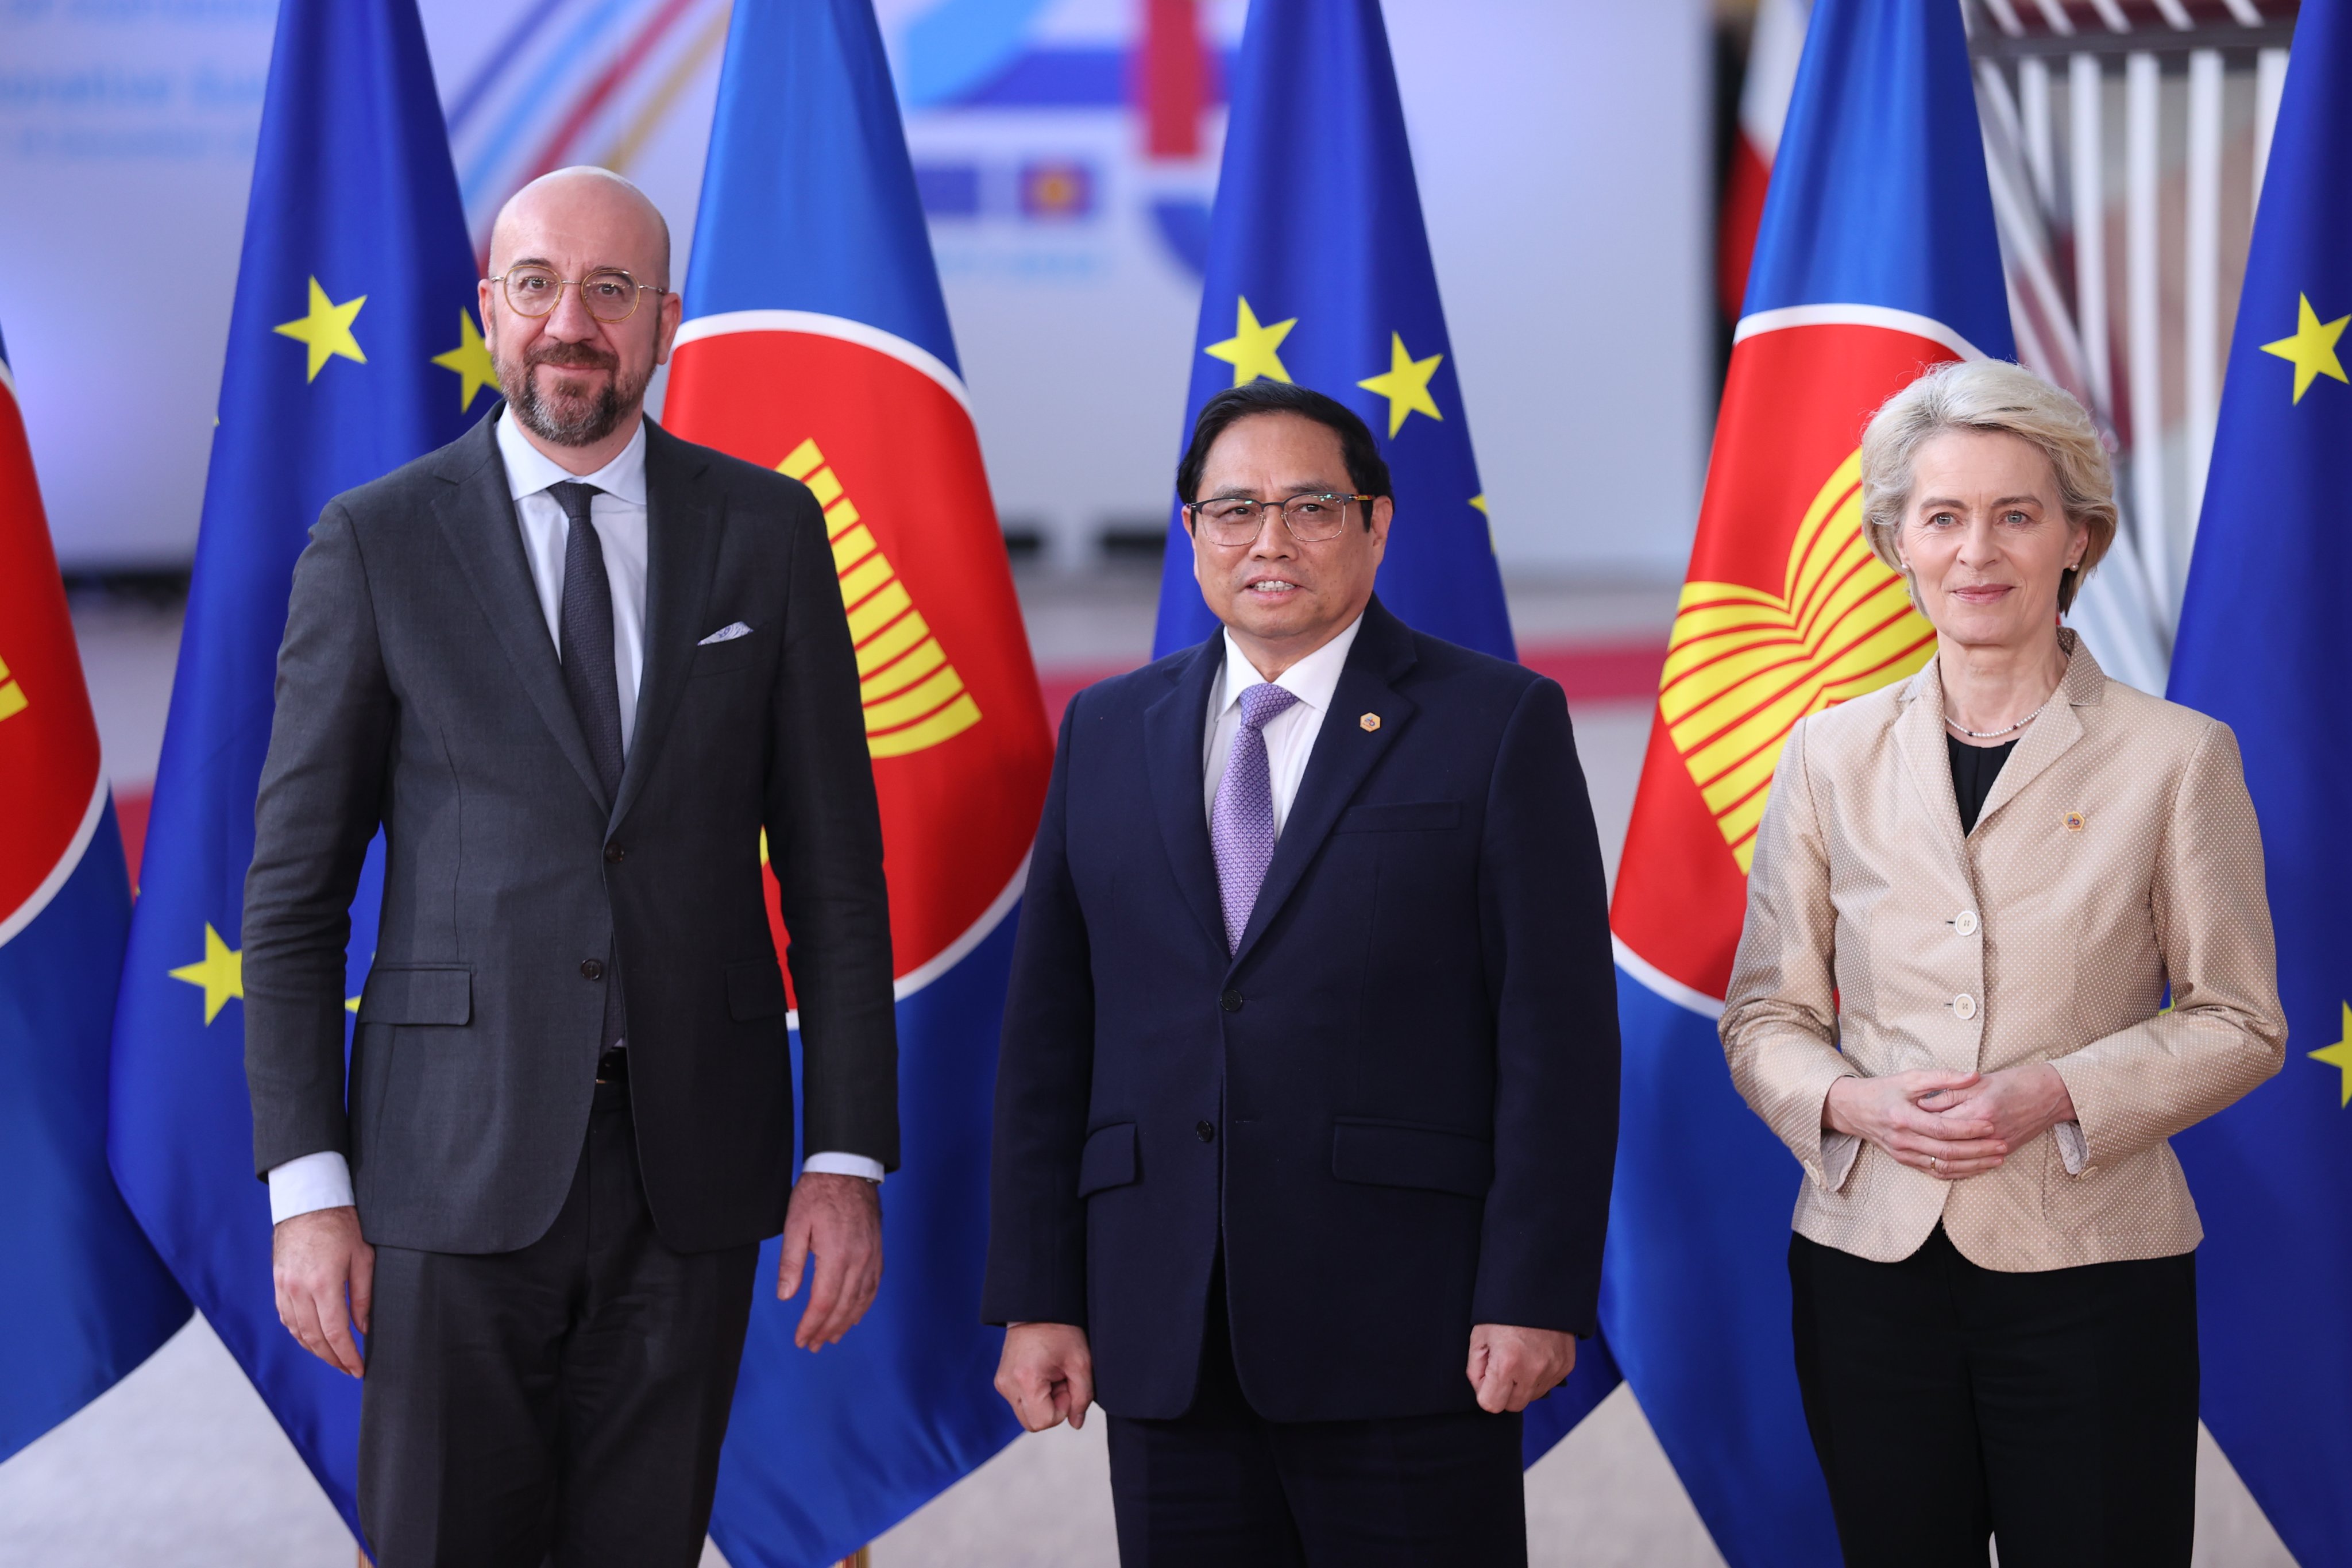 Hội nghị cấp cao ASEAN-EU là nơi các lãnh đạo ASEAN và Liên minh châu Âu thảo luận về các vấn đề quan trọng như kinh tế, chính trị và an ninh. Việt Nam, là một thành viên vô cùng quan trọng trong ASEAN, sẽ đóng vai trò chủ trì cuộc họp này. Để nắm bắt tin tức và thông tin mới nhất về hội nghị, hãy xem bức ảnh liên quan.